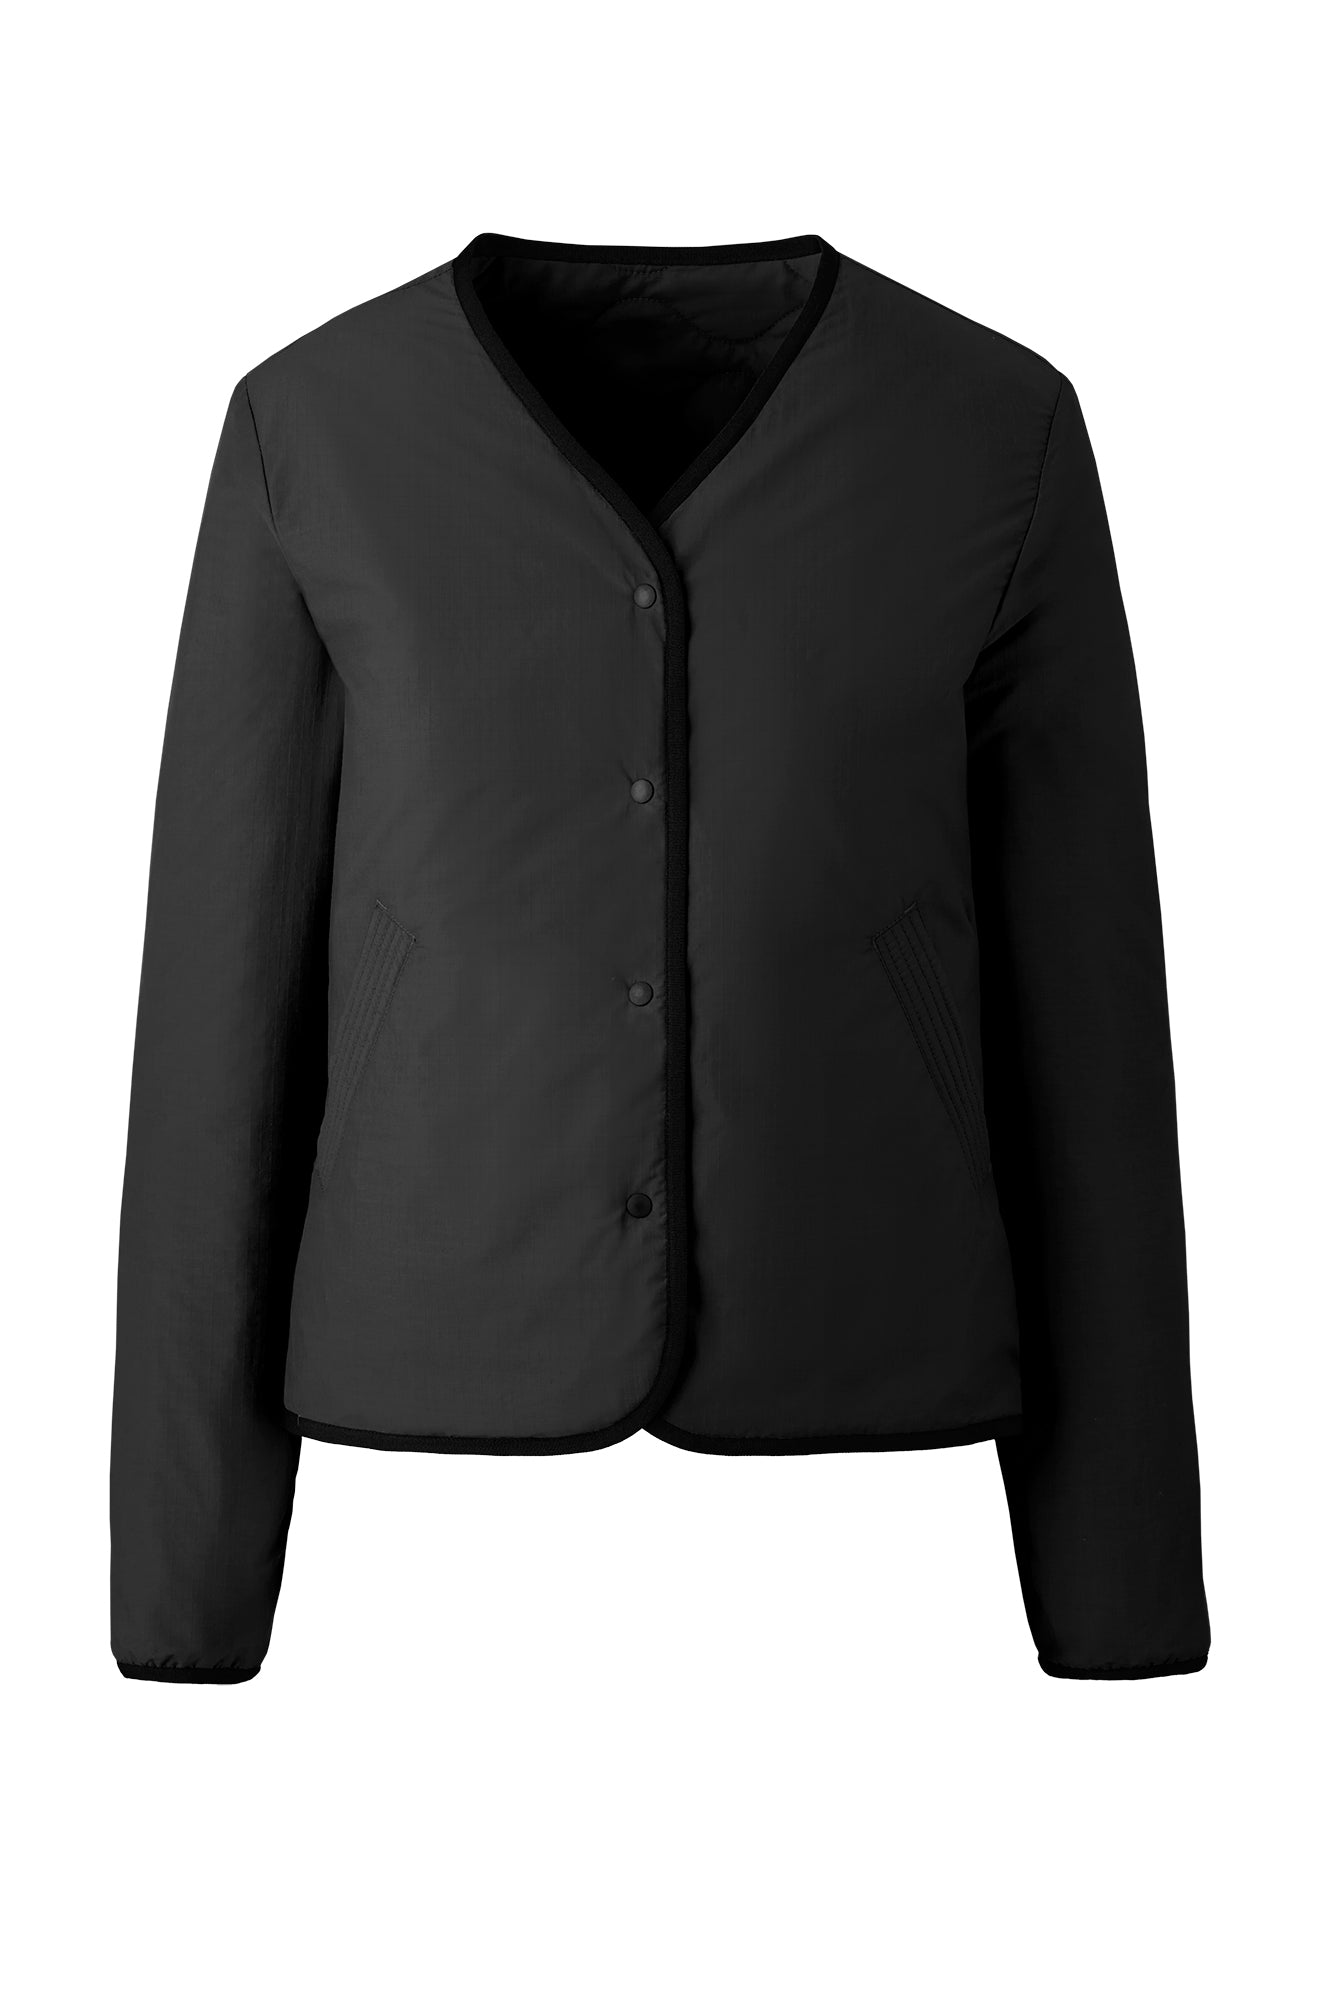 Annex Liner Jacket - Black